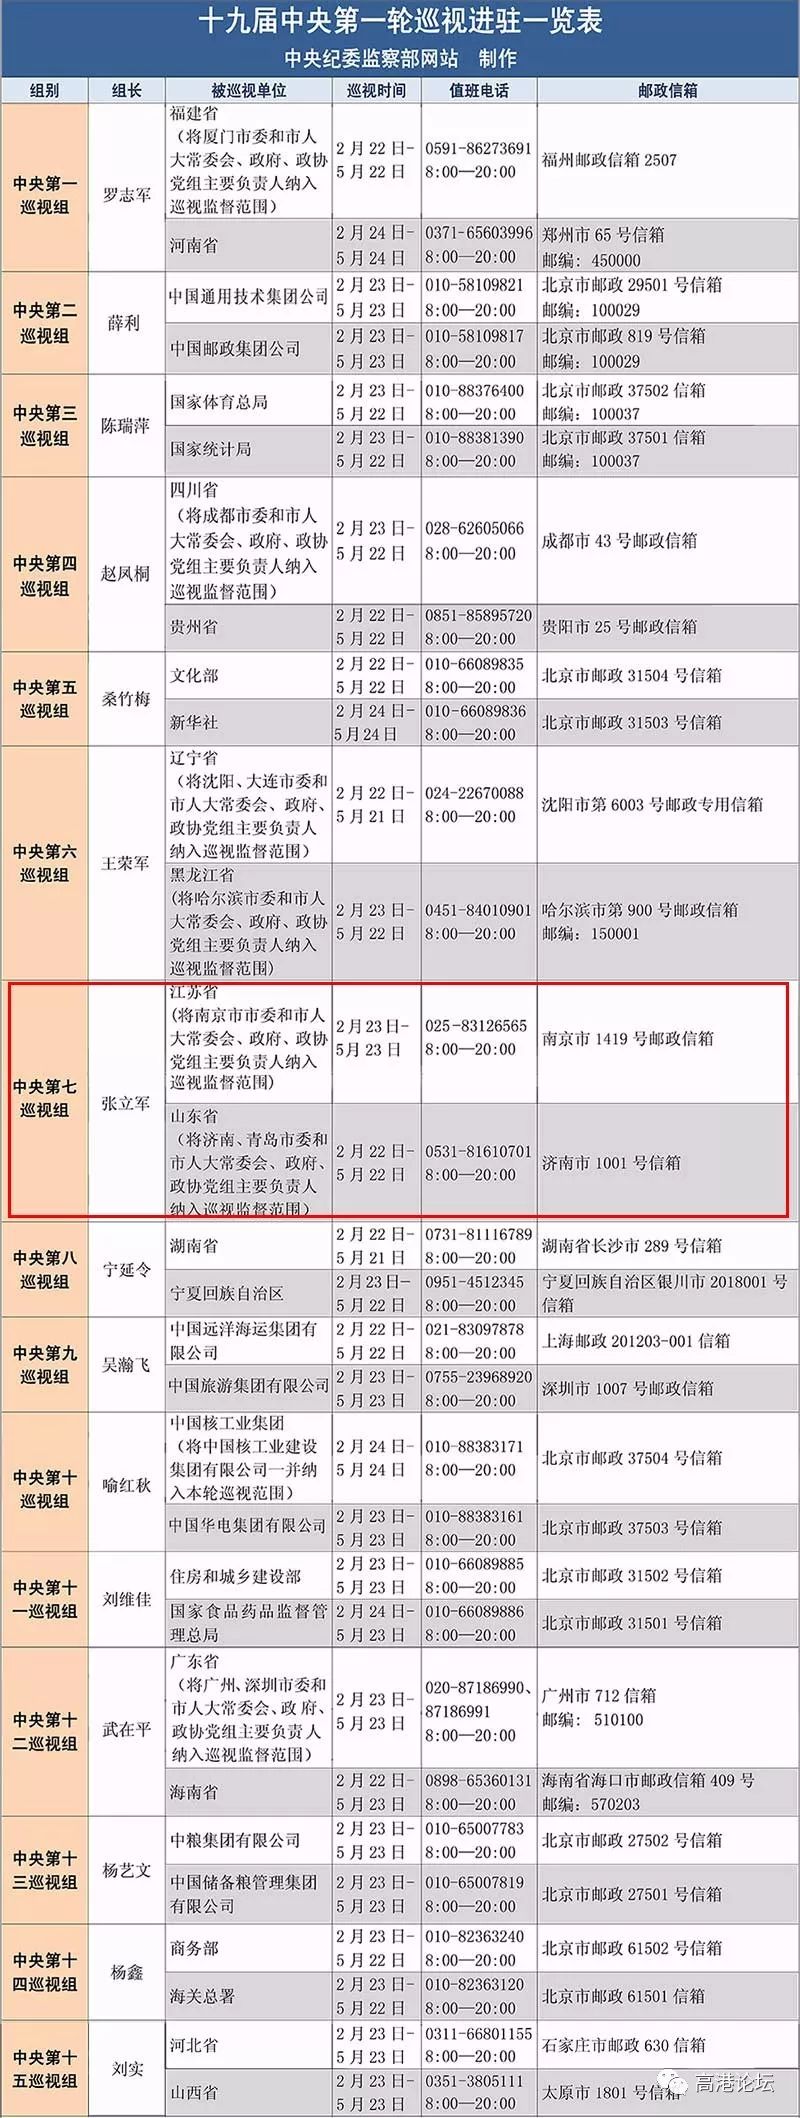 据了解,中央巡视组将在江苏省工作3个月,巡视期间分别设专门值班电话